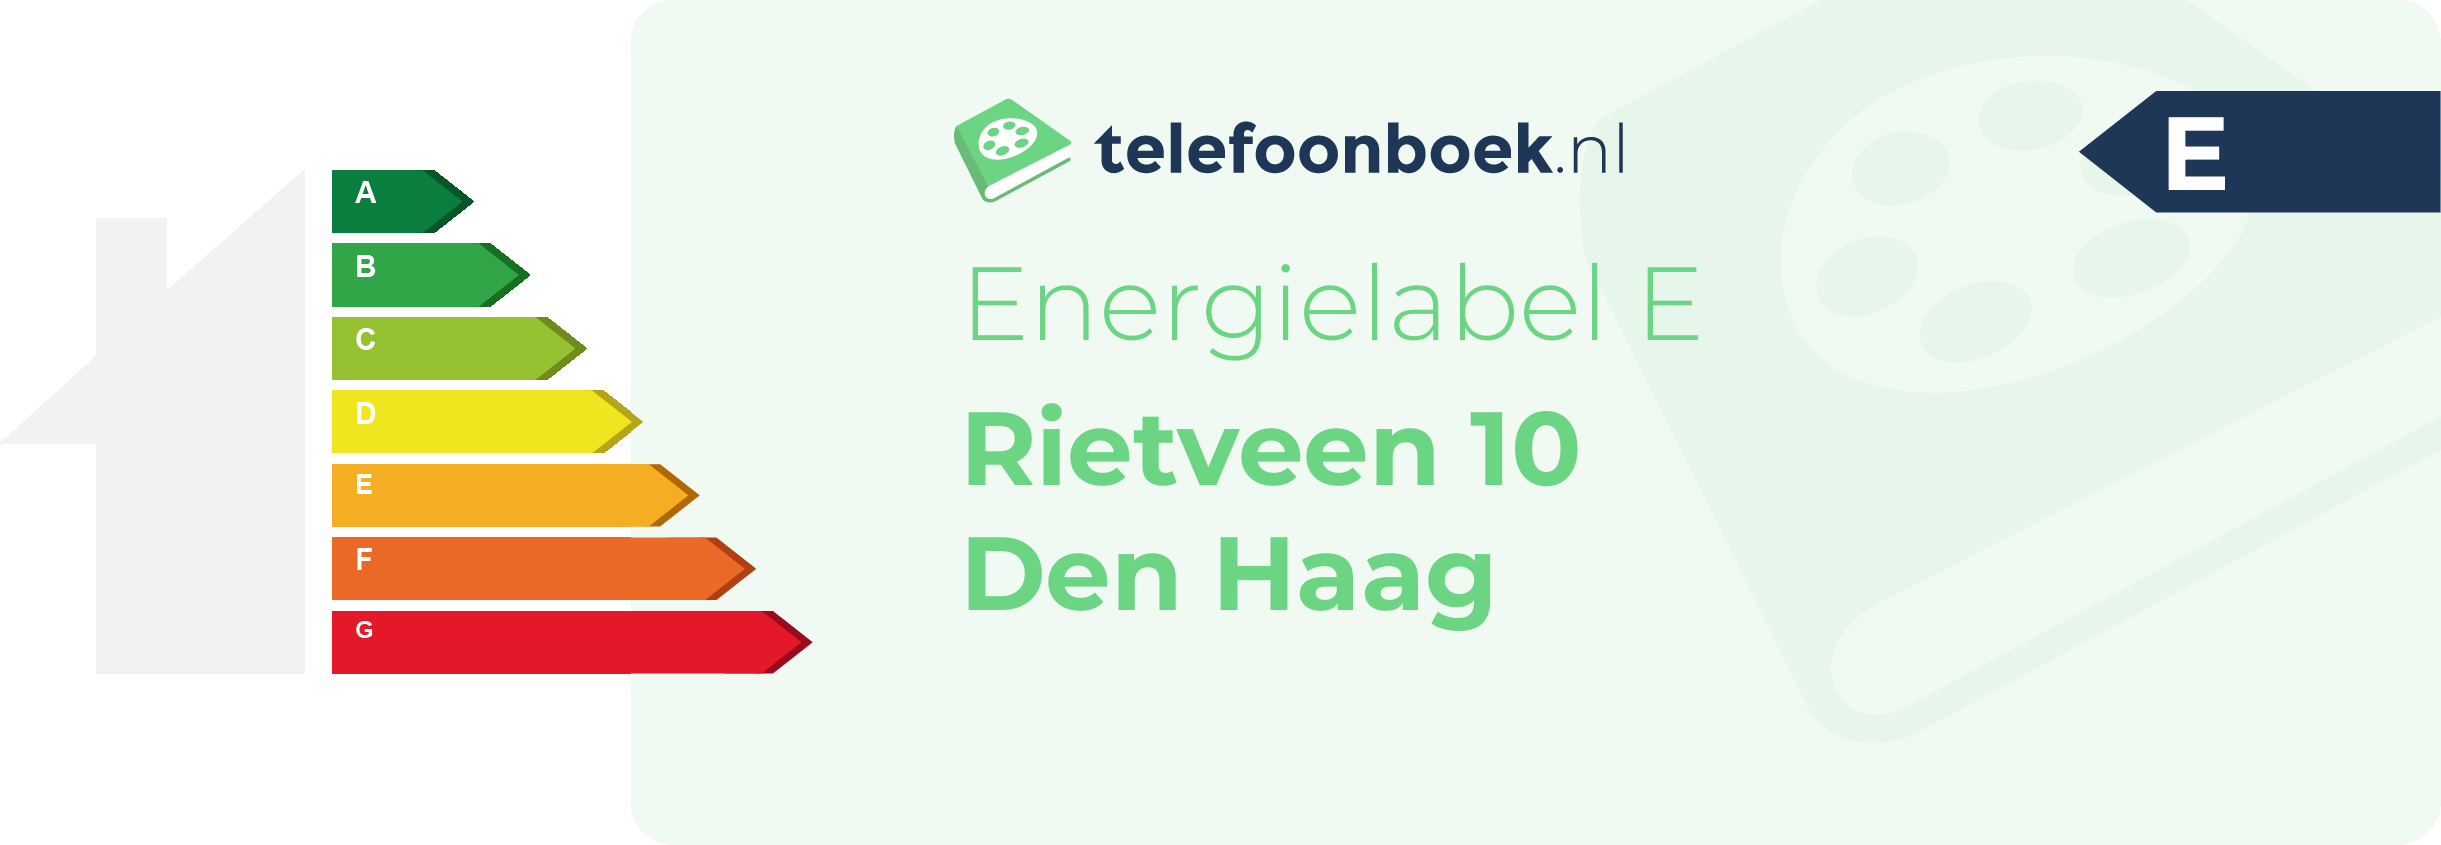 Energielabel Rietveen 10 Den Haag